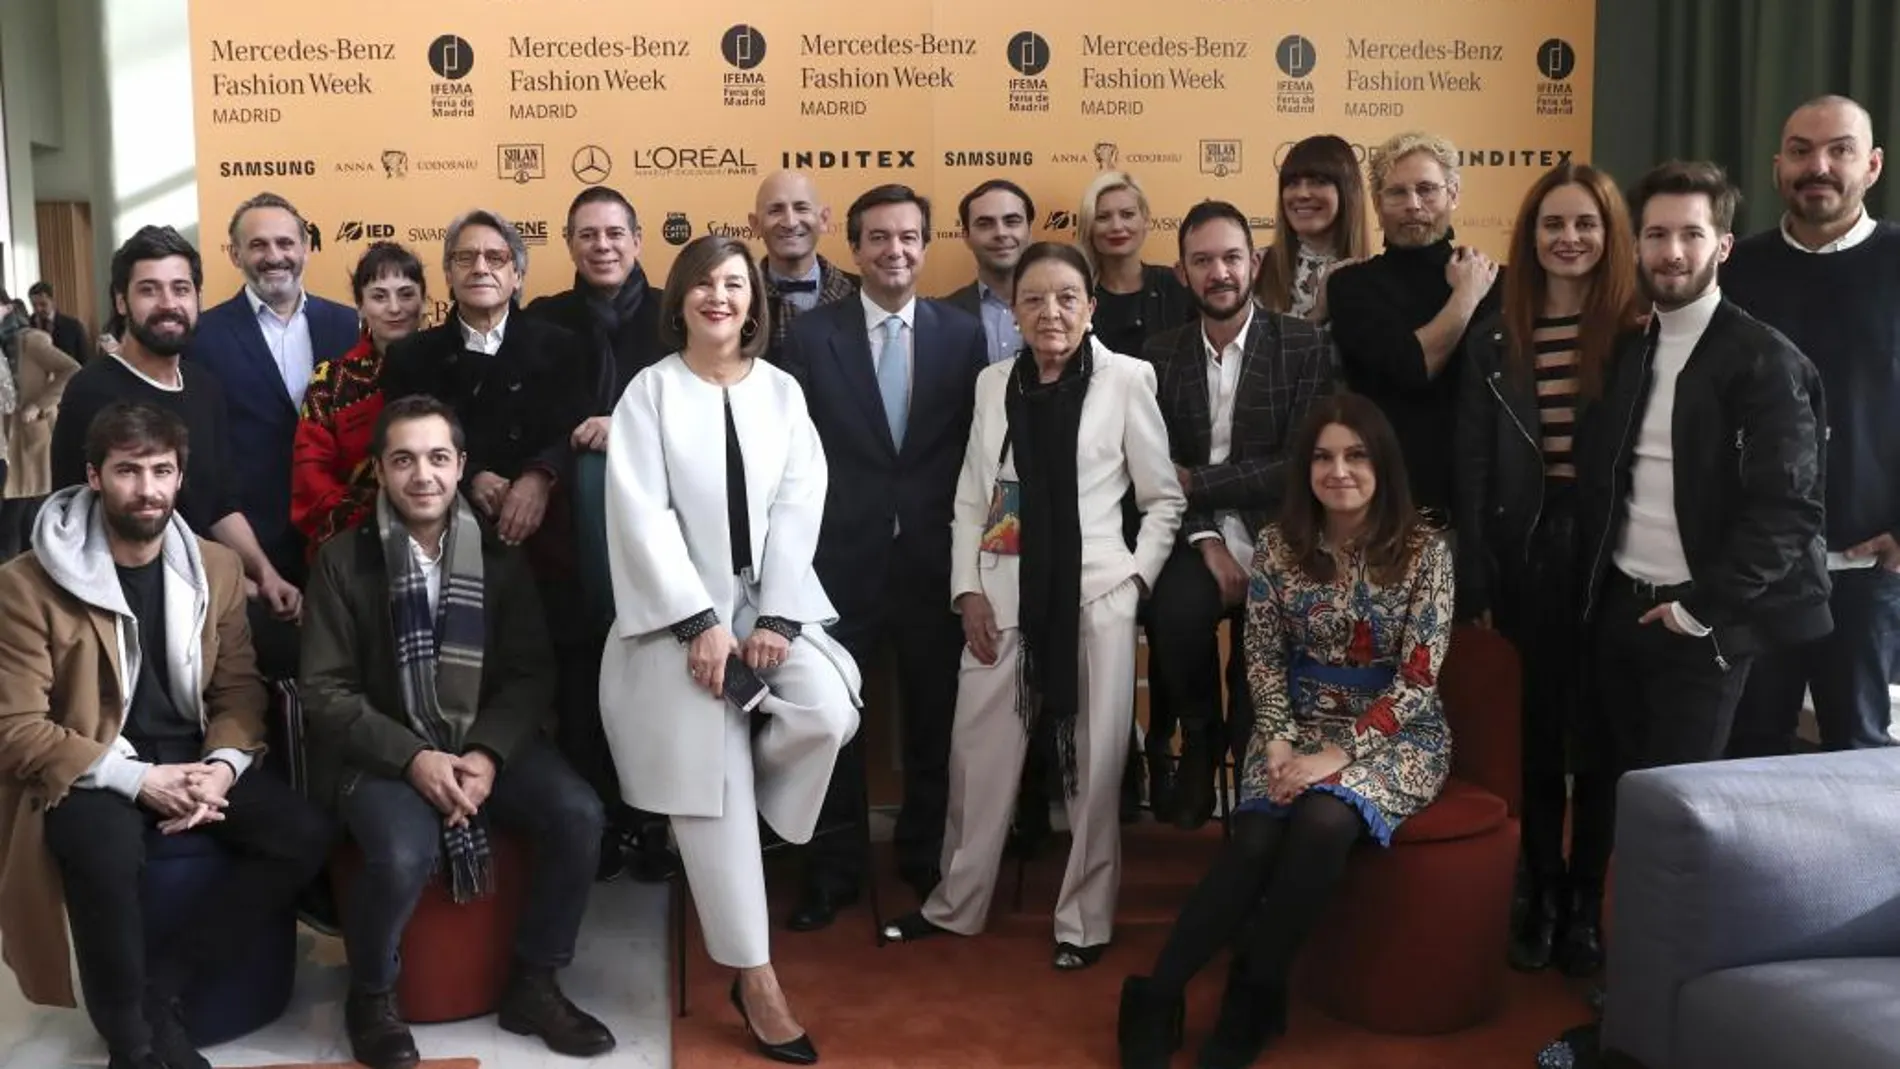 La nueva directora de Mercedes-Benz Fashion Week Madrid, Charo Izquierdo, acompañada por su antecesora en el cargo, Cuca Solana, y varios diseñadores, durante la presentación de la 65 edición de la pasarela